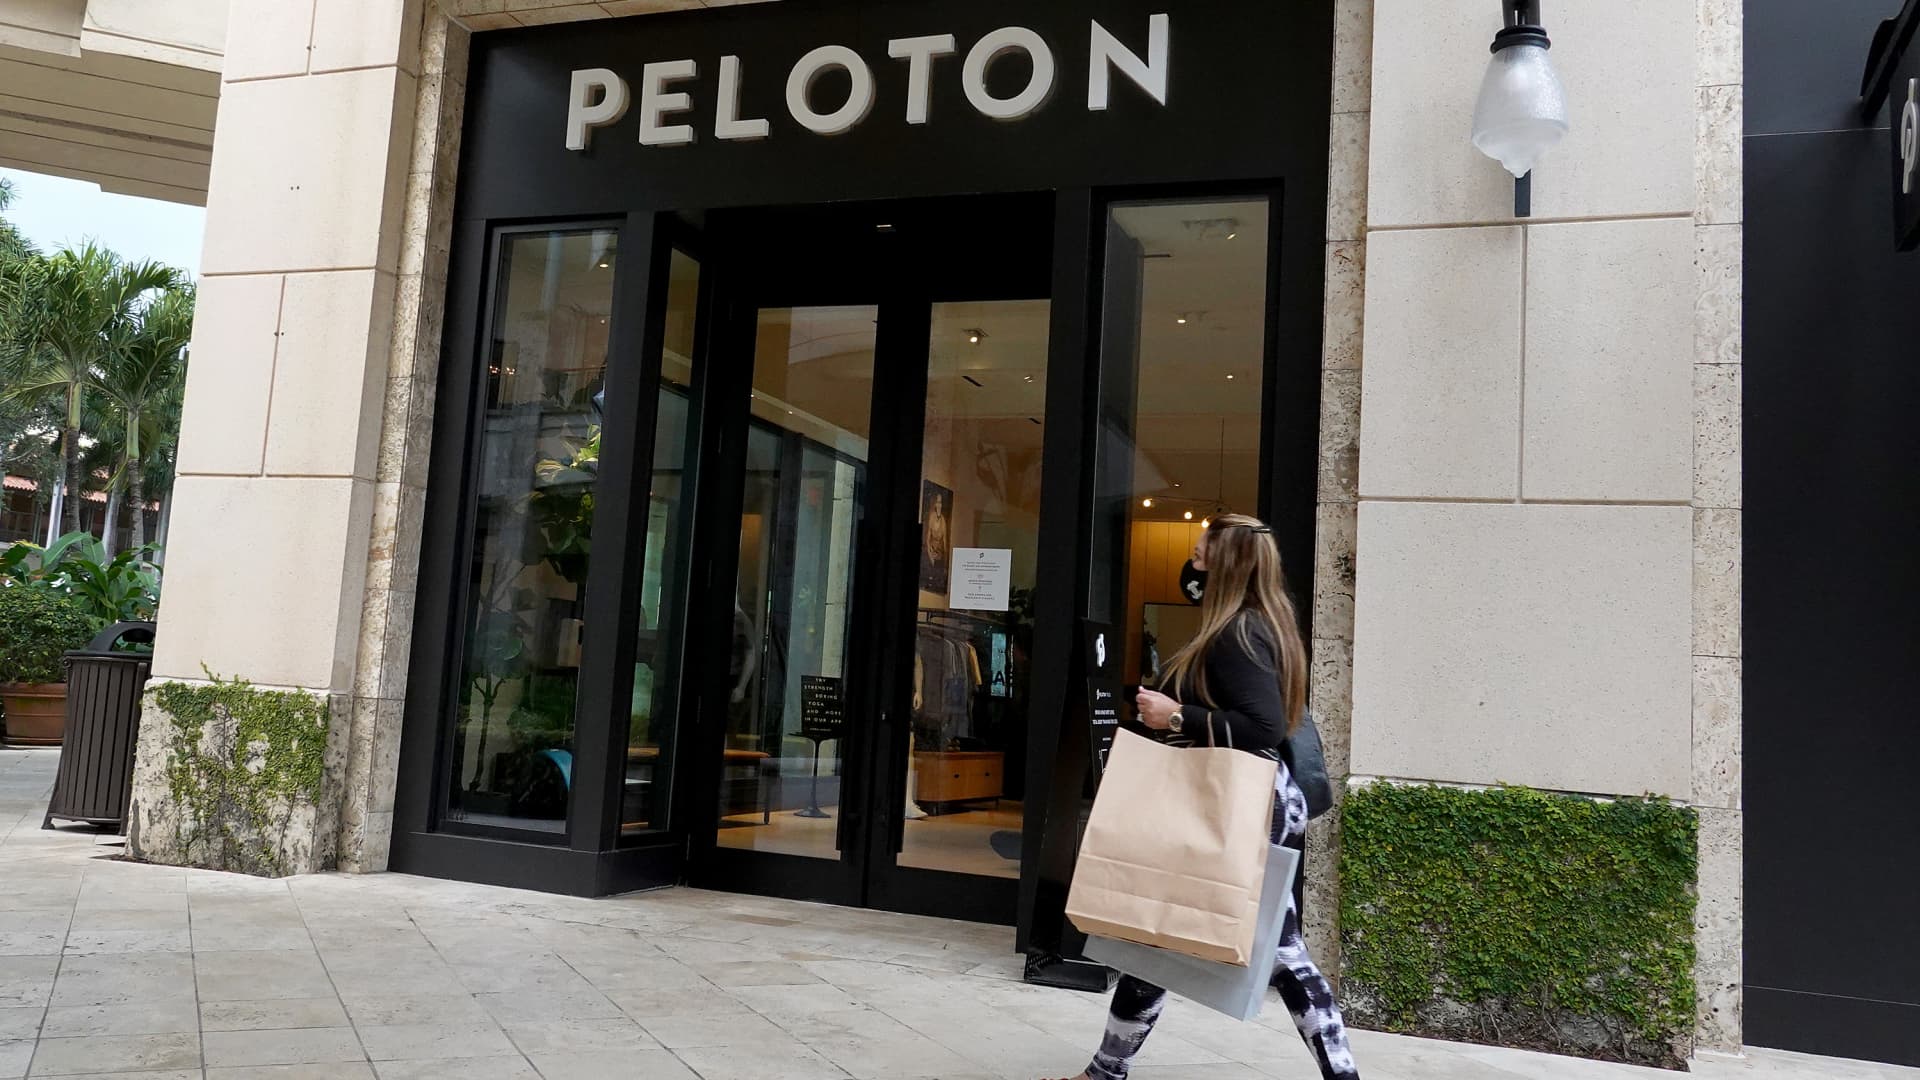 Peloton Corporation (PTON) báo cáo lỗ tăng trong quý 4 năm 2022